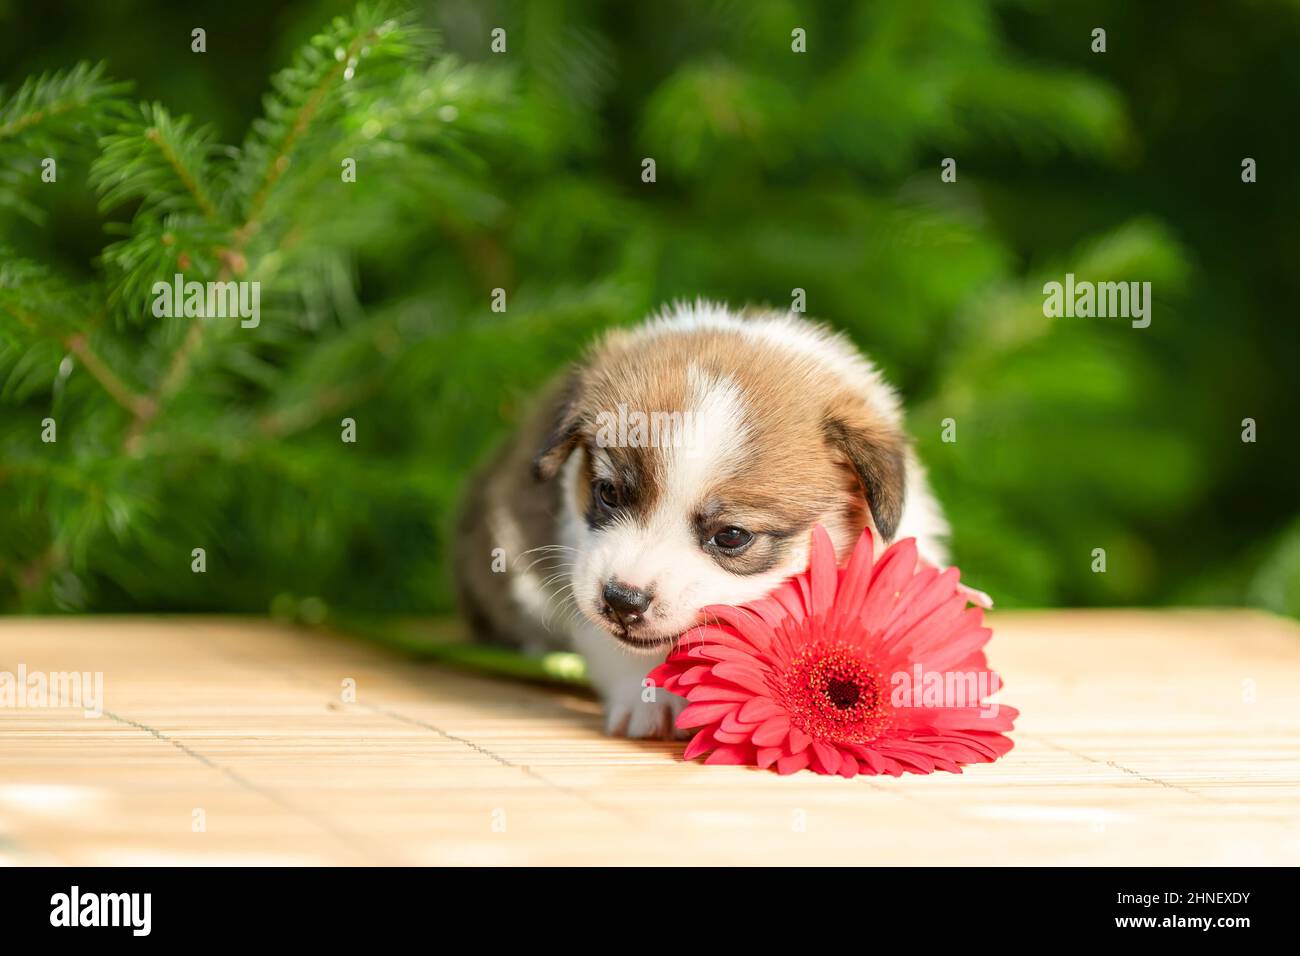 Drôle petit chiot de pembroke gallois chien de race corgi couché à l'extérieur dans le jardin vert près de fleur rose Banque D'Images